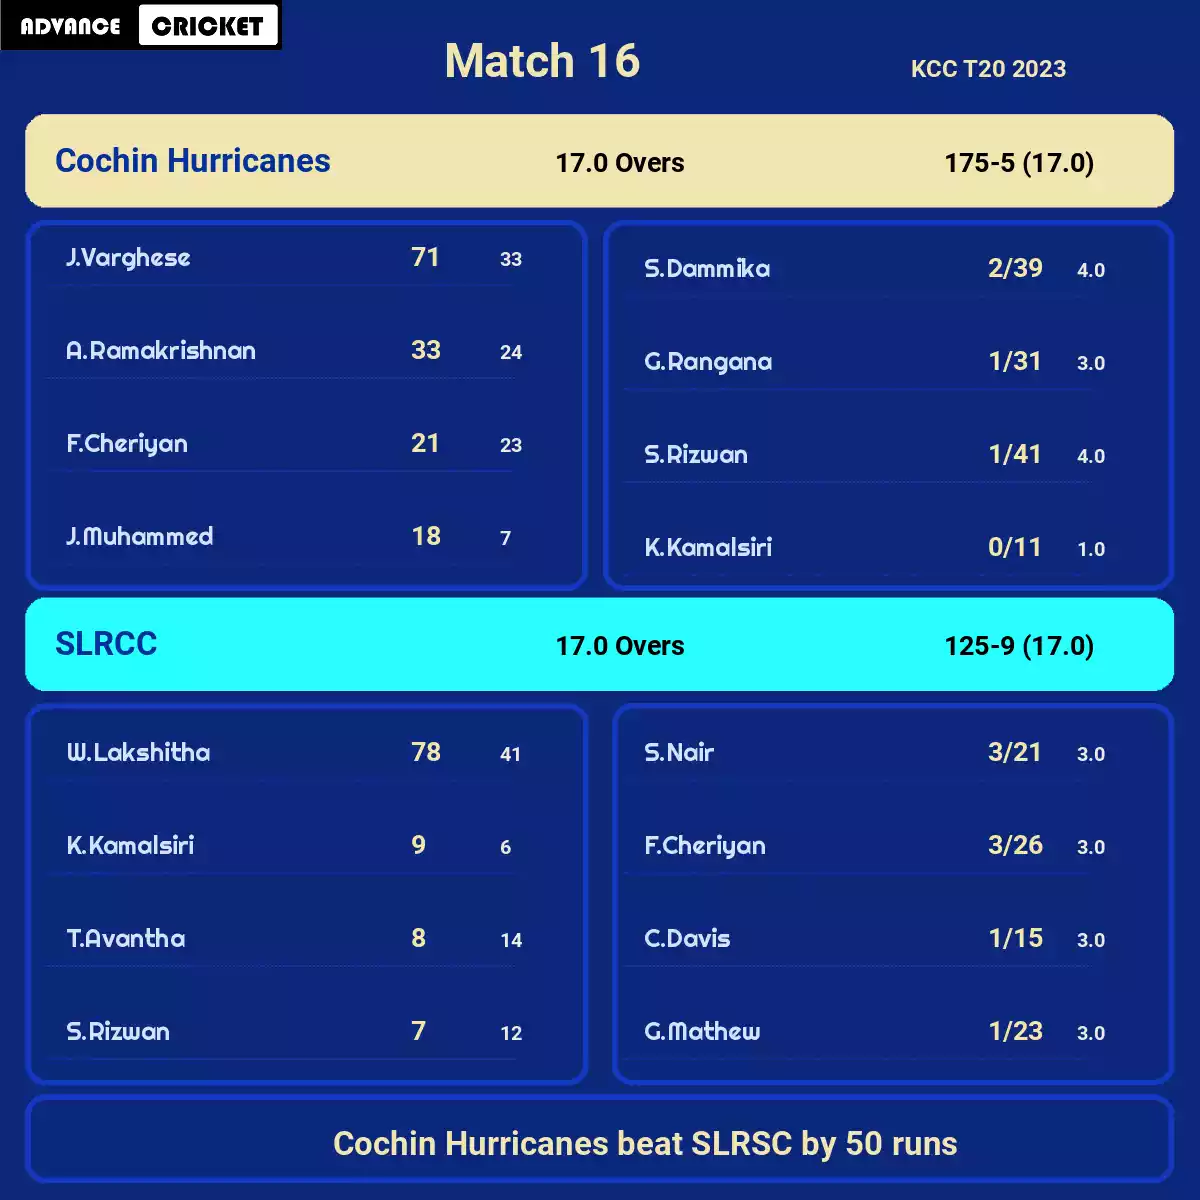 COH vs SLRCC Match 16 KCC T20 2023